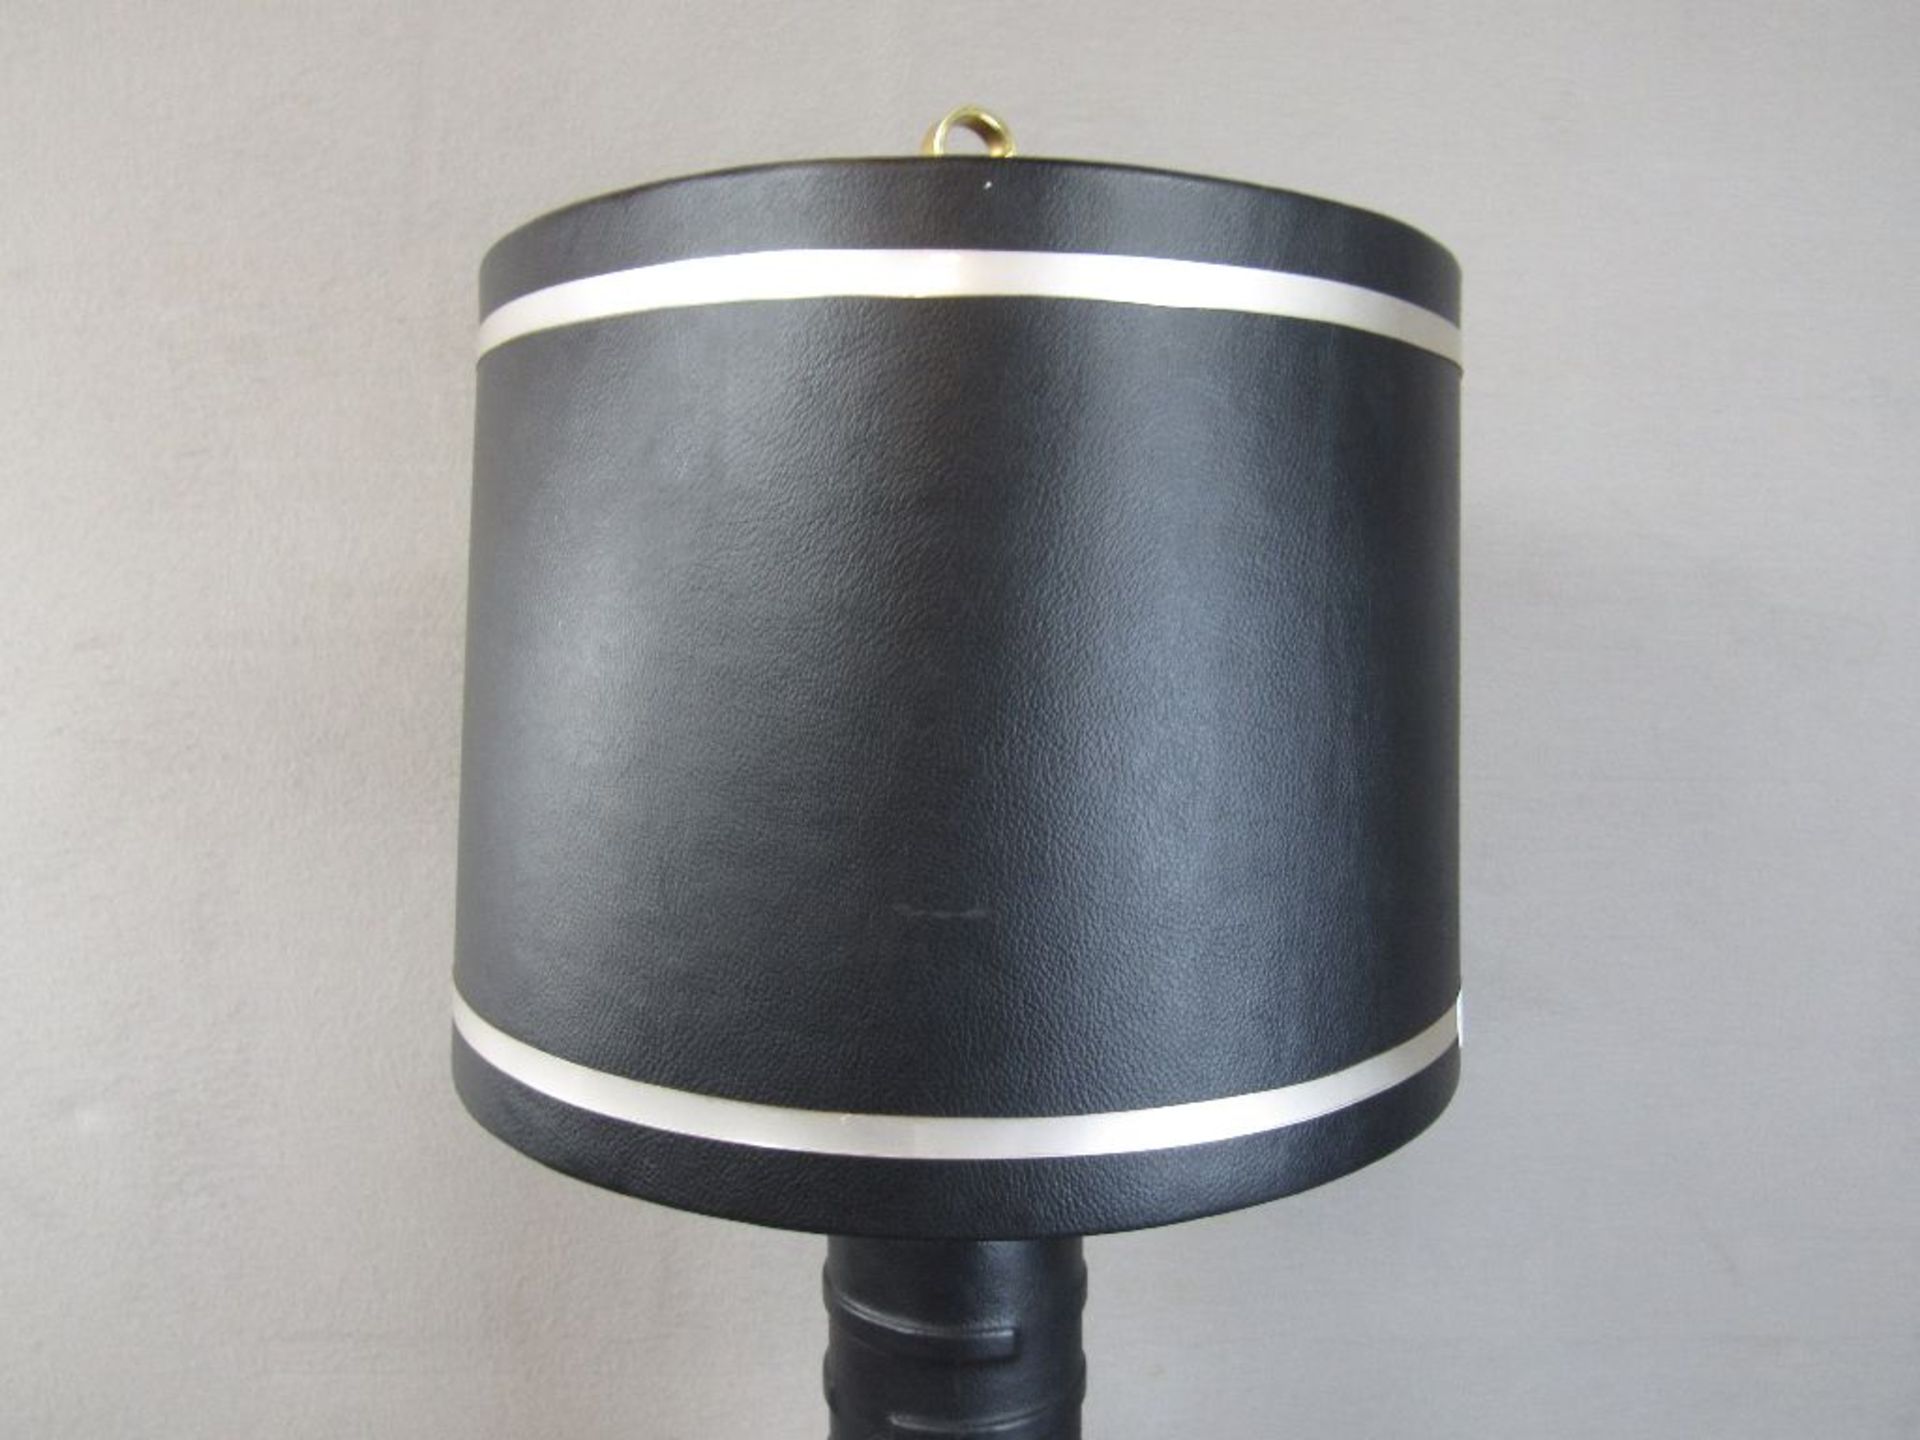 Vintage 60er Jahre Tischlampe Schirm und Fuß Leder bezogen Echtlederbezug Gesamthöhe 80cm - Image 3 of 6